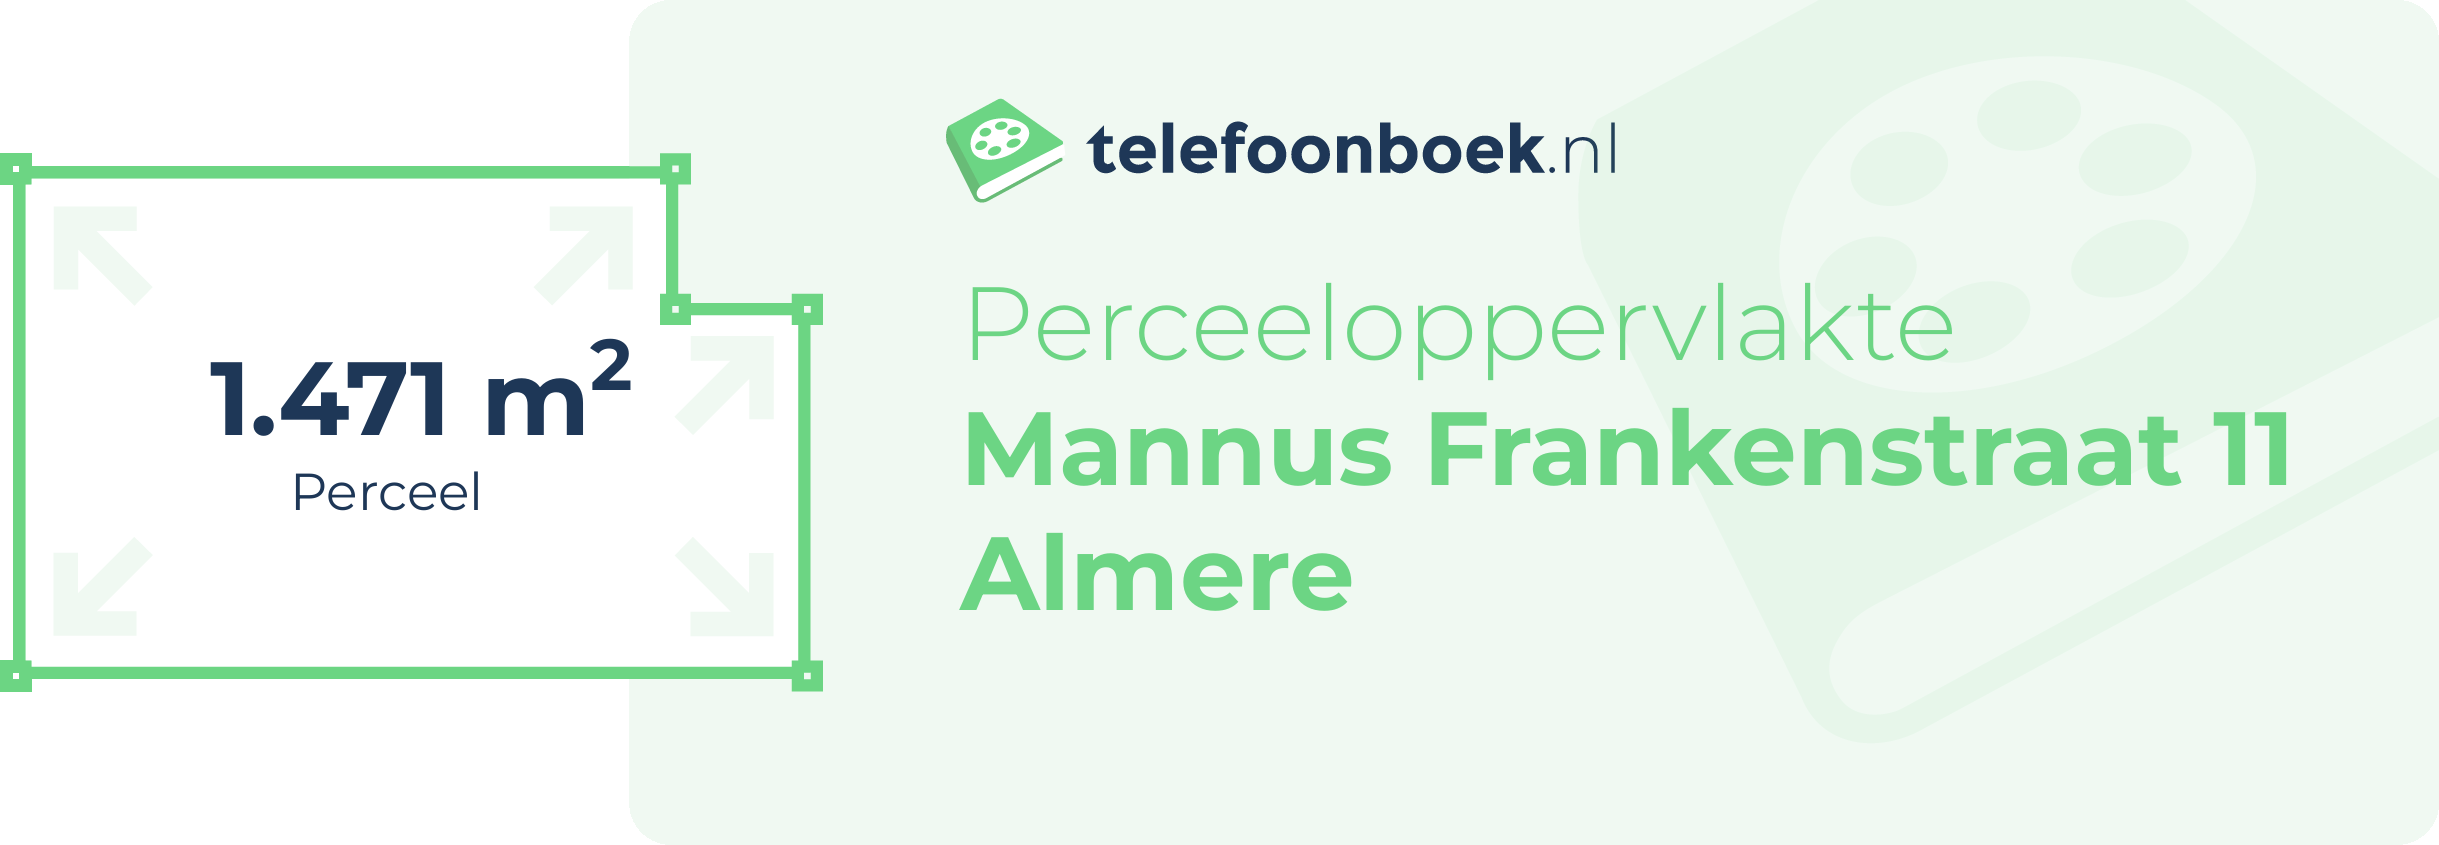 Perceeloppervlakte Mannus Frankenstraat 11 Almere